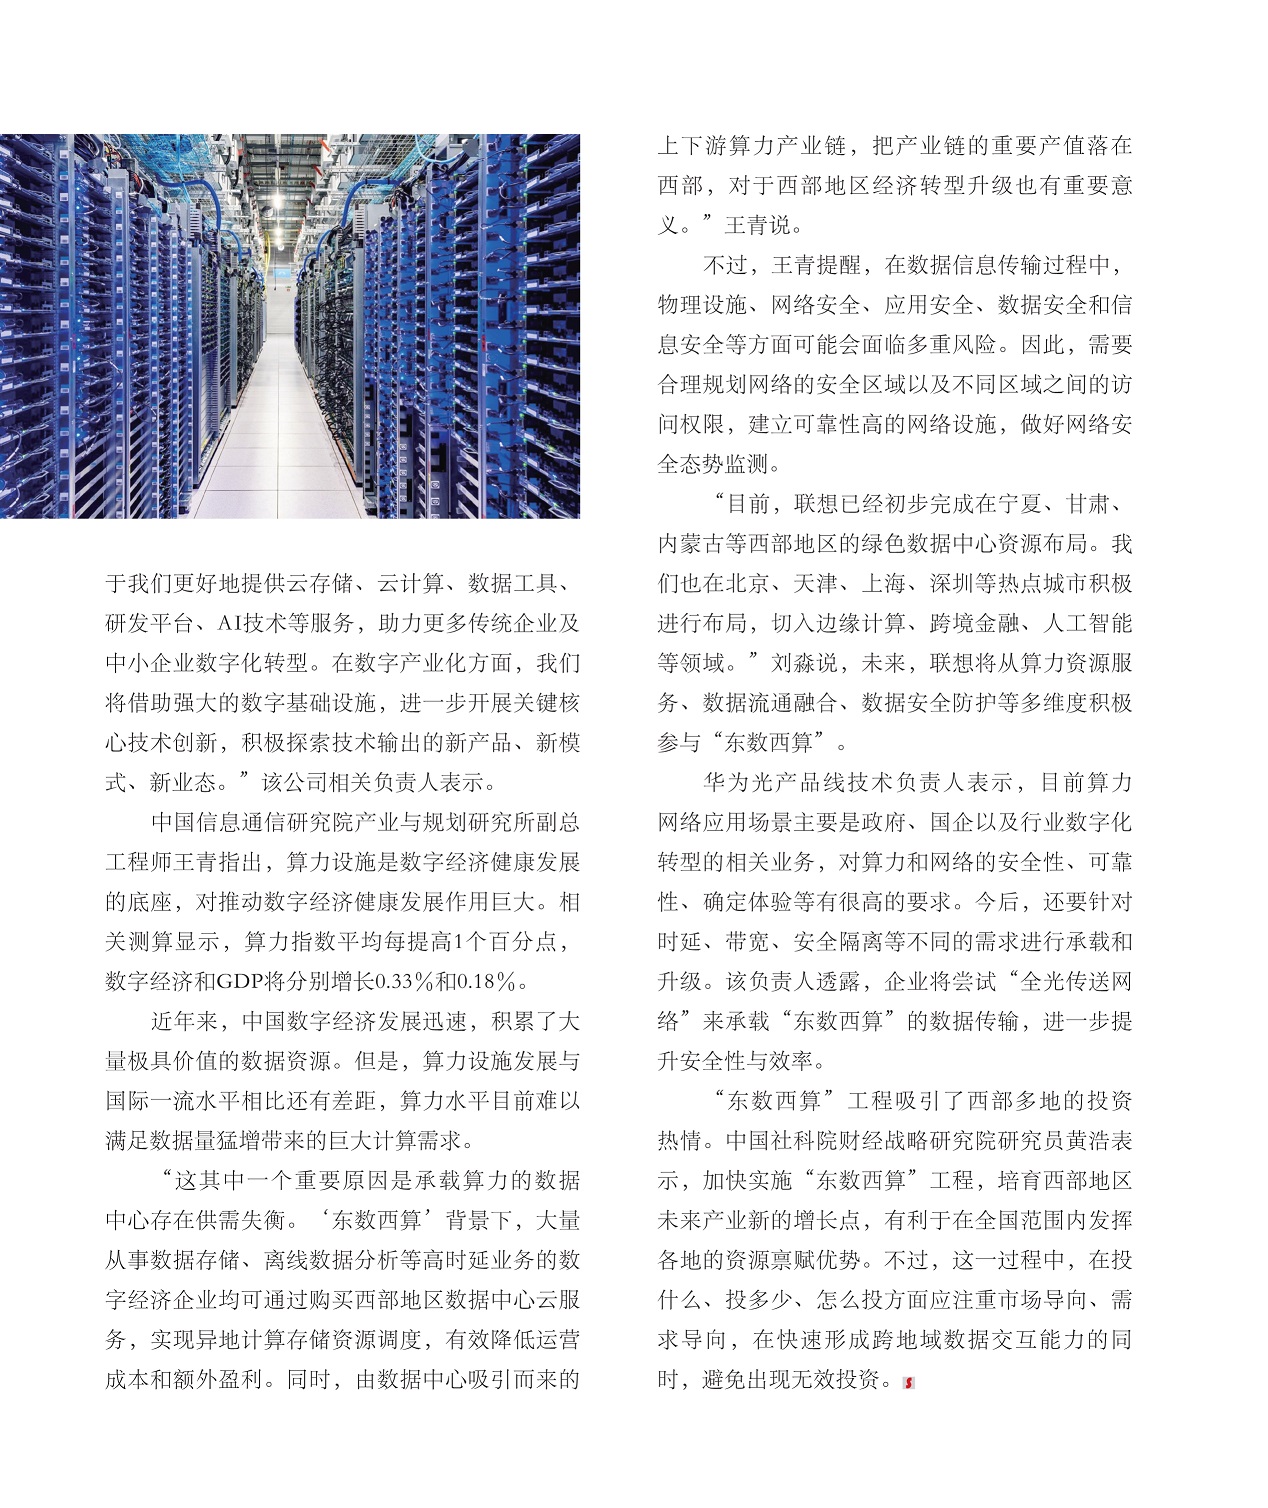 中国数字经济发展迅速,“东数西算”工程吸引了西部多地的投资热情